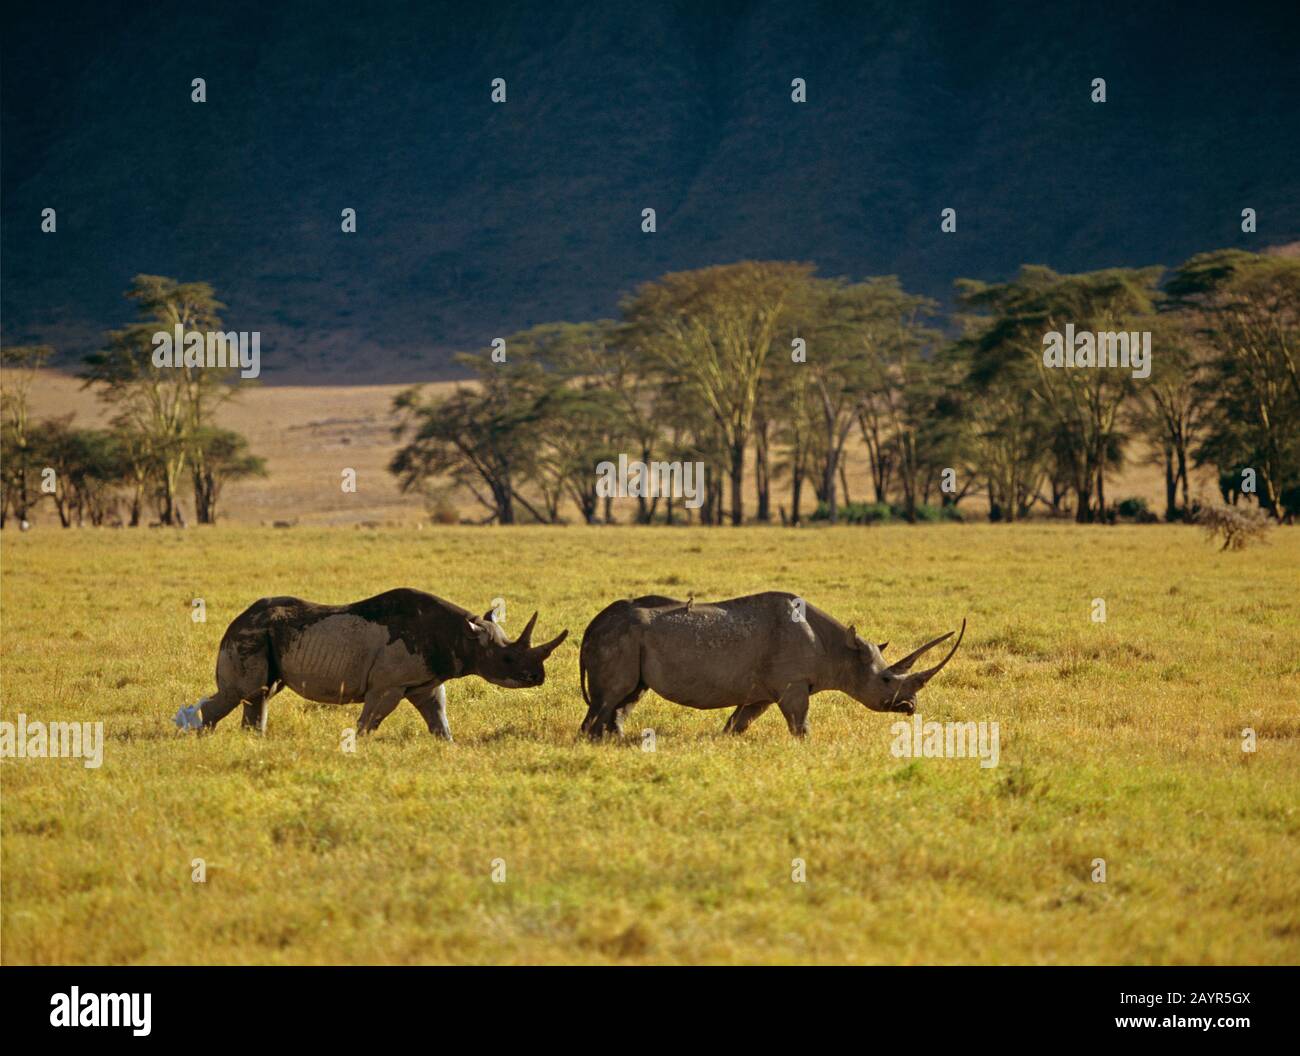 Schwarze Nashörner, mit Hakenlippen bestückte Nashörner, Nashörner (Diceros bicornis), zwei Nashörner, die in der Savanne hintereinander laufen, Seitenansicht, Afrika Stockfoto